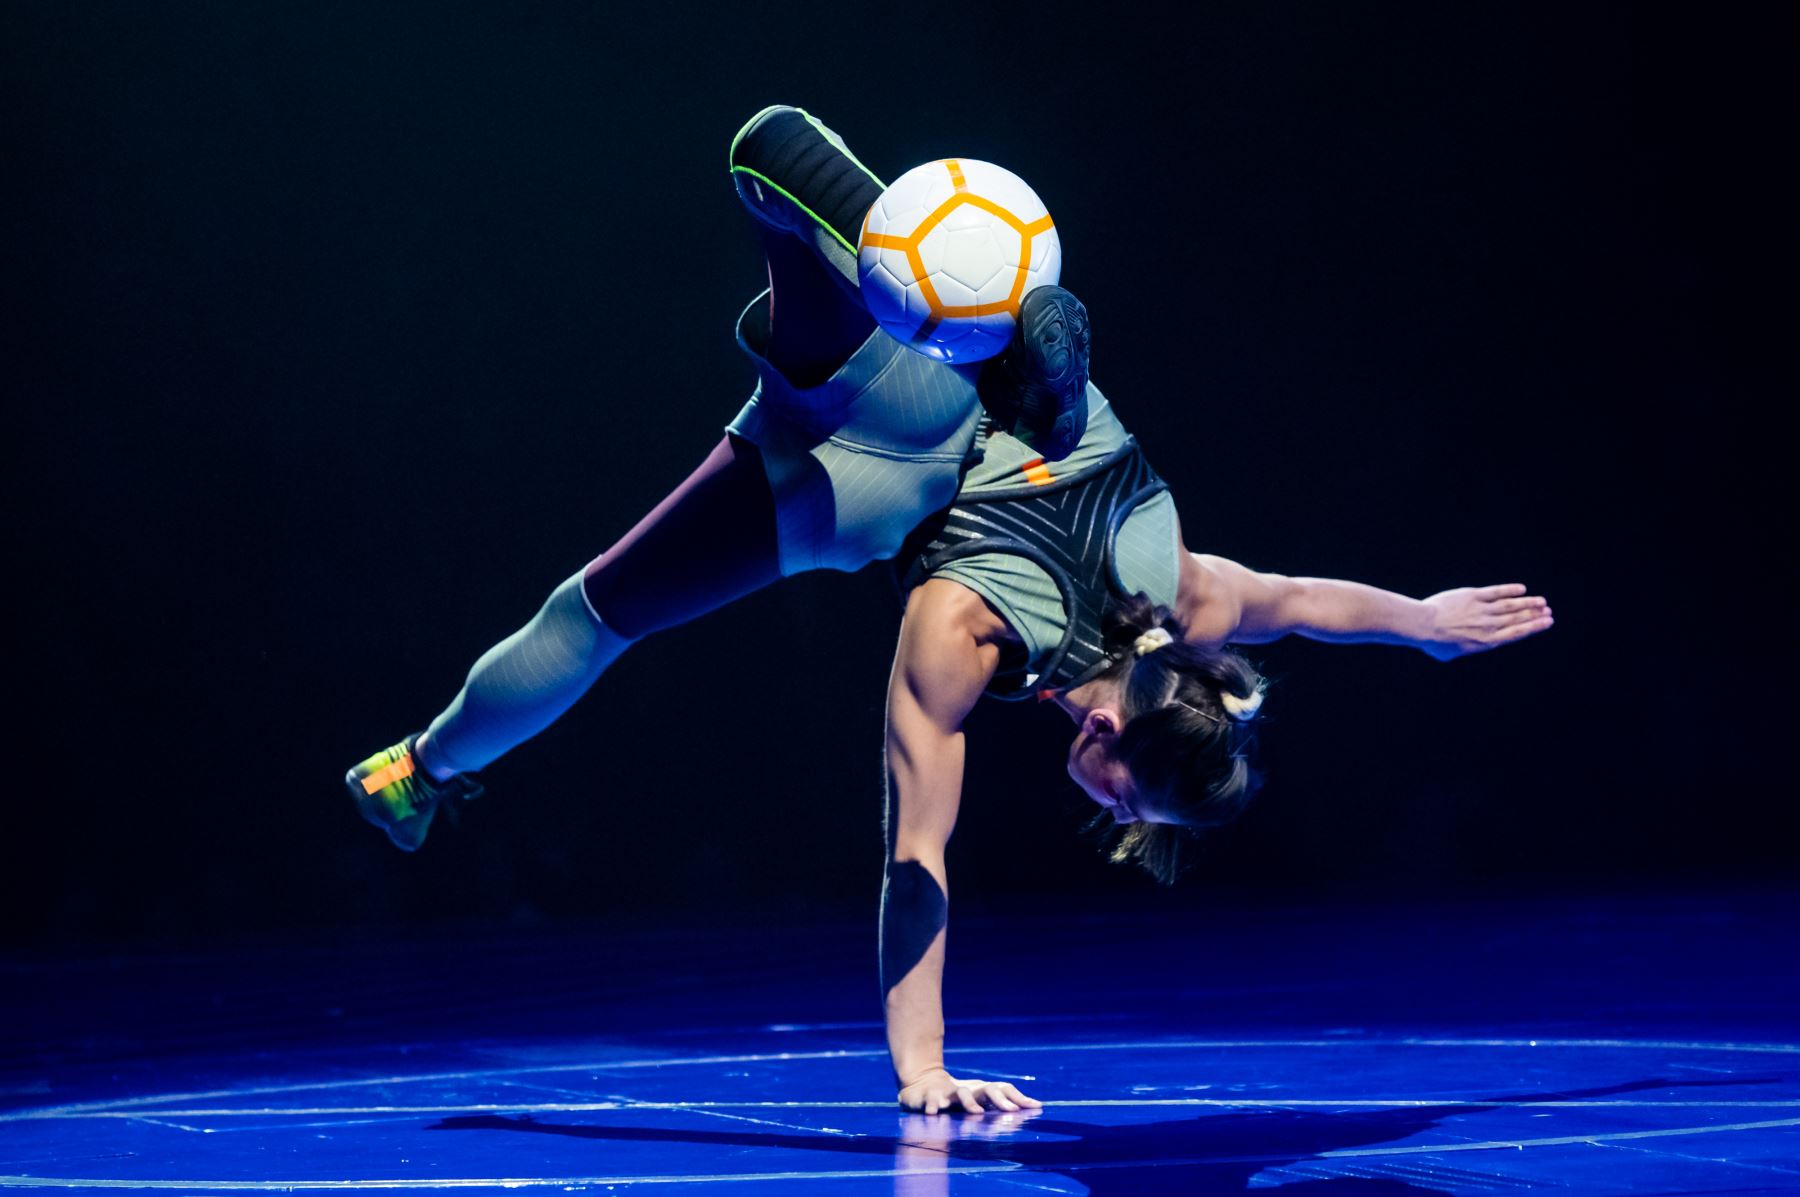 El 7 de agosto, Cirque du Soleil trae "Messi10" a escena